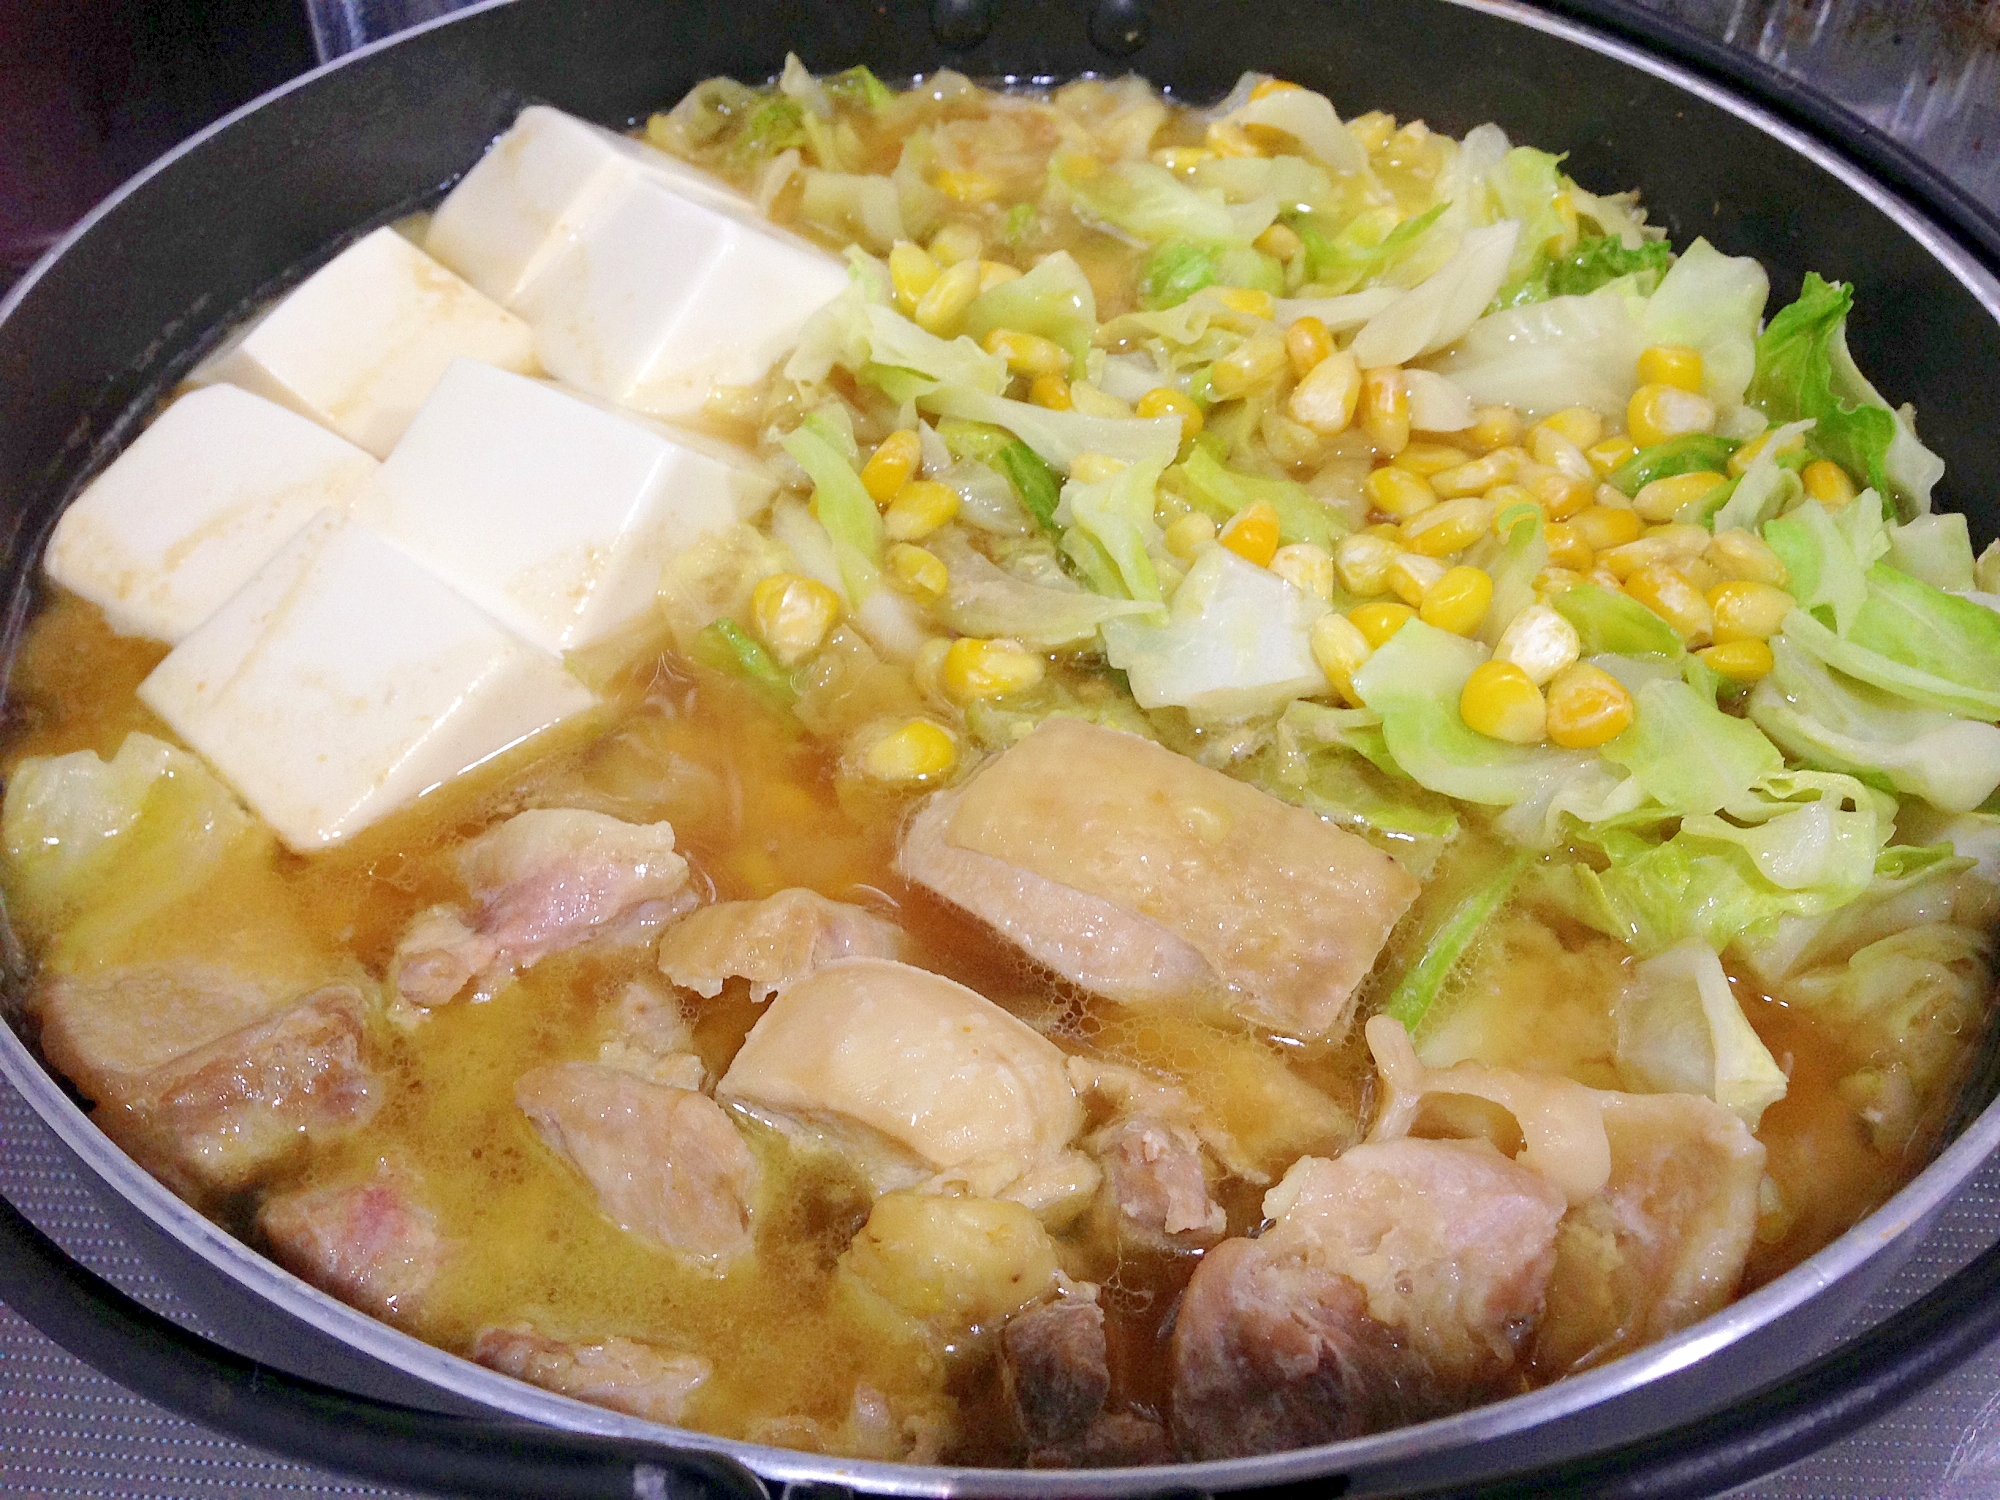 簡単手作り☆鶏肉とキャベツの味噌バター鍋